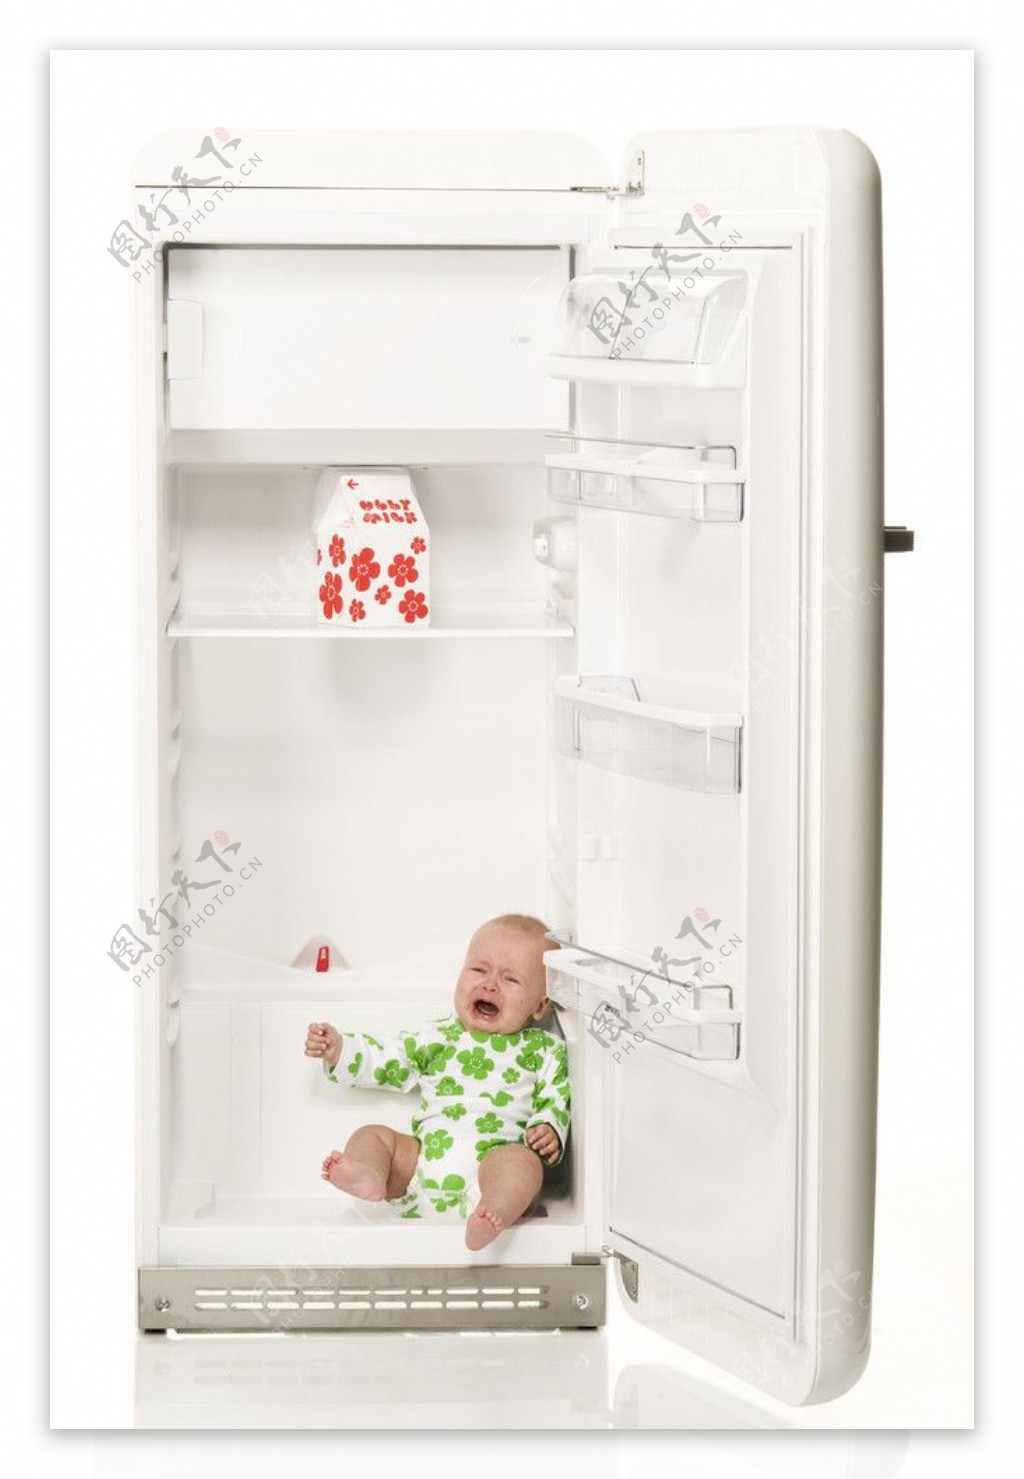 冰箱里的婴儿图片